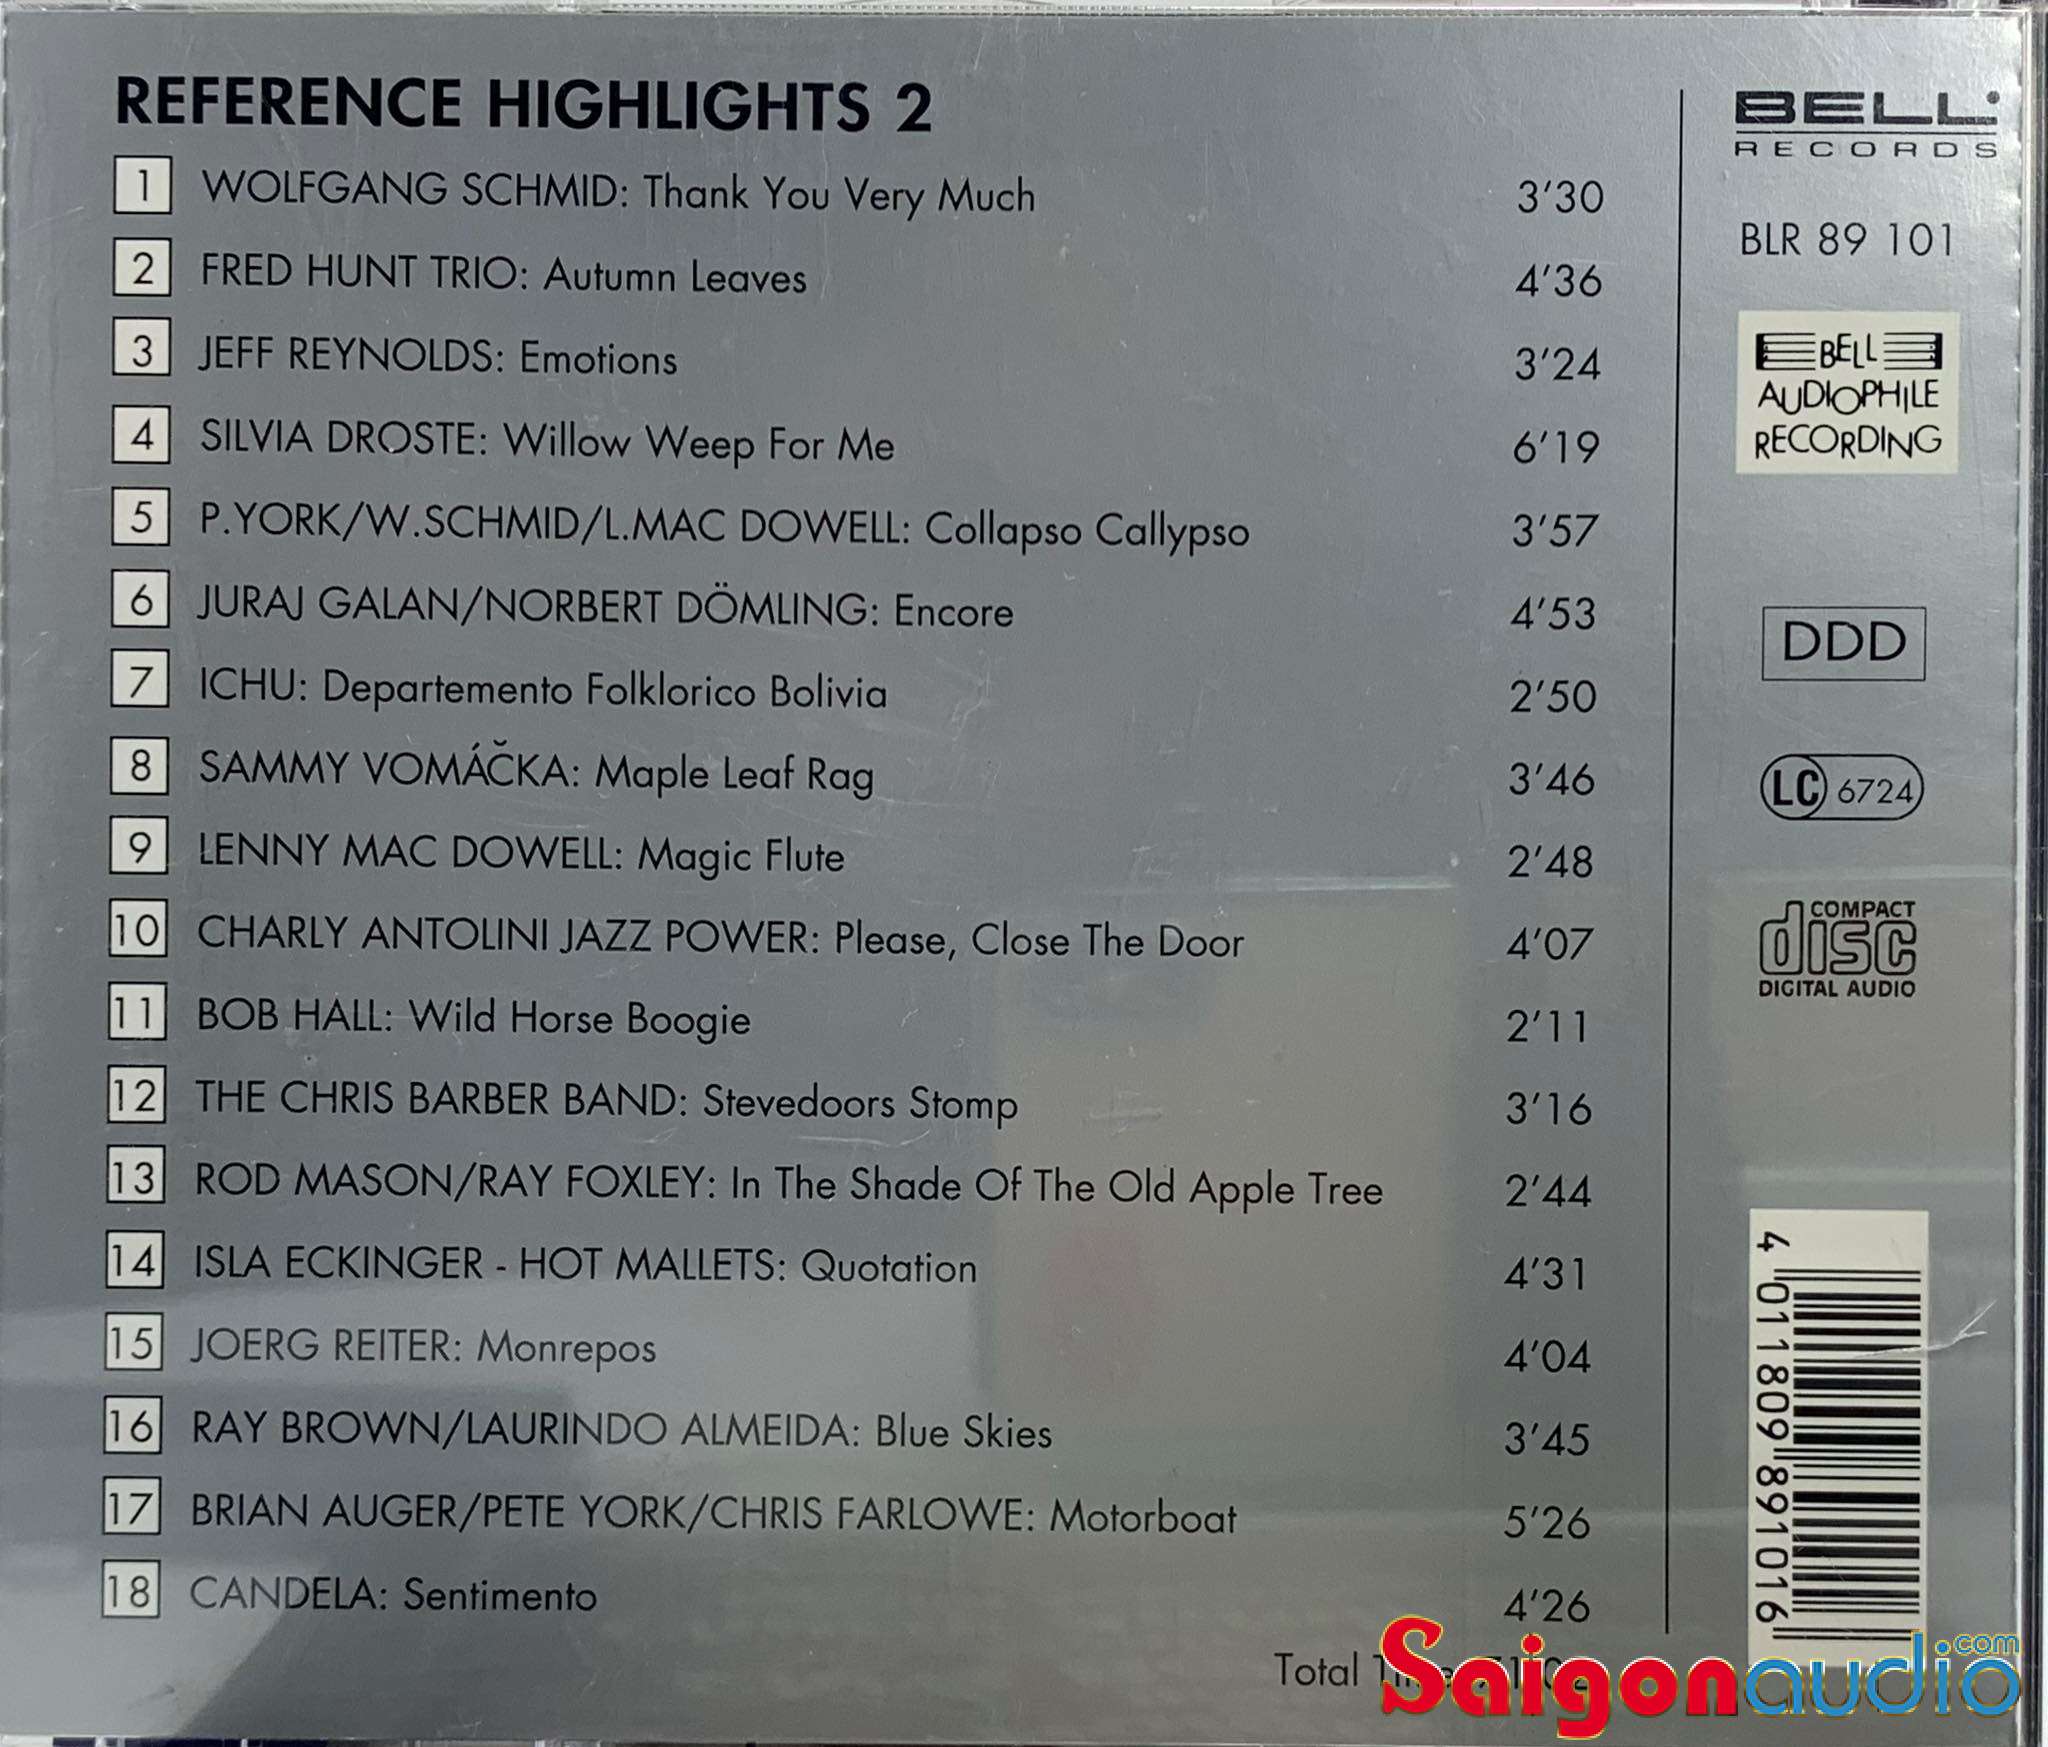 Đĩa CD gốc Reference No.2 - Bell Audiophile Recording GOLD (Free ship khi mua 2 đĩa CD cùng hoặc khác loại)